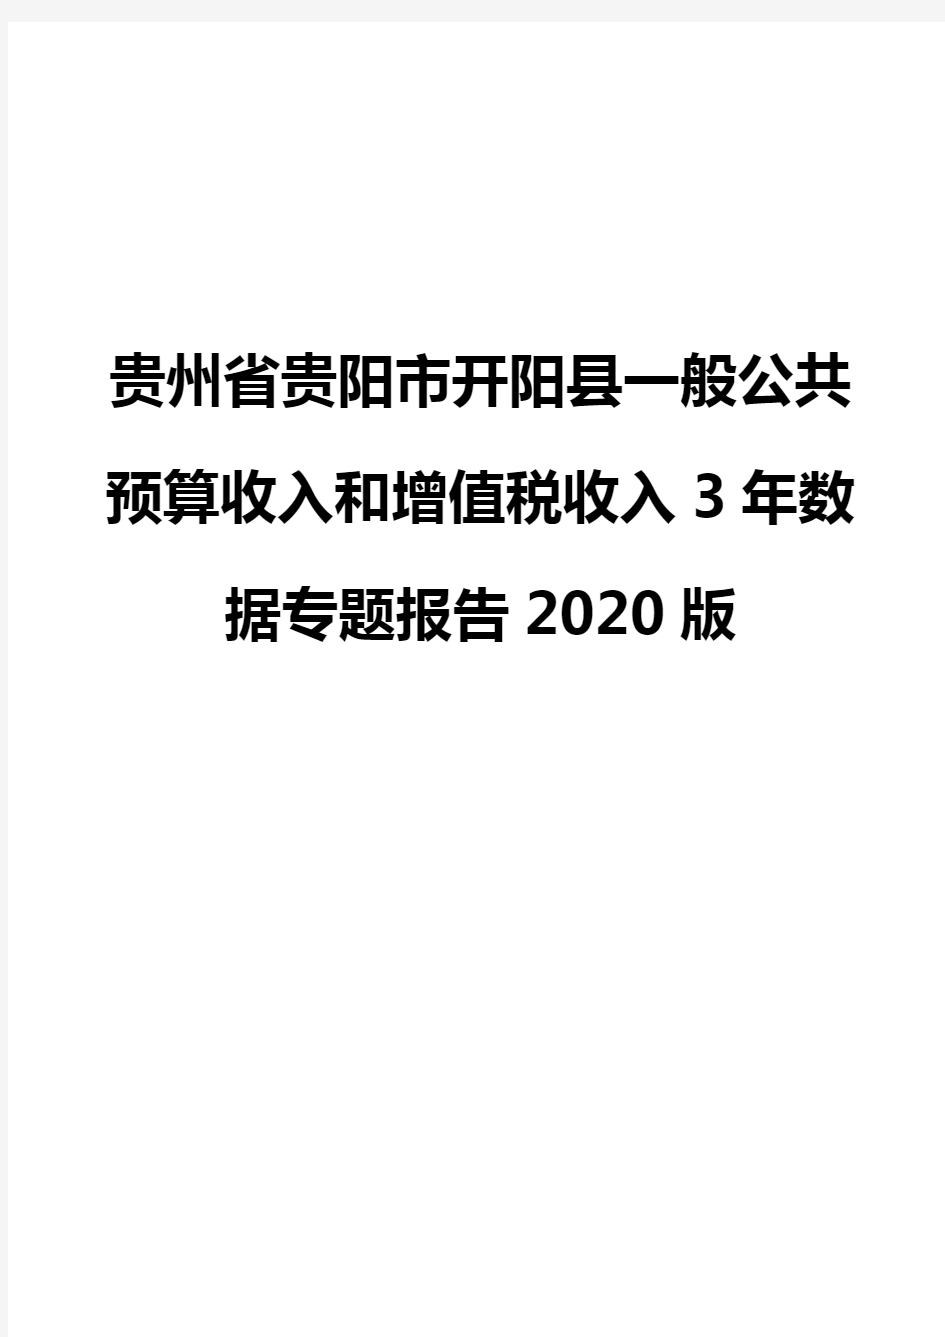 贵州省贵阳市开阳县一般公共预算收入和增值税收入3年数据专题报告2020版